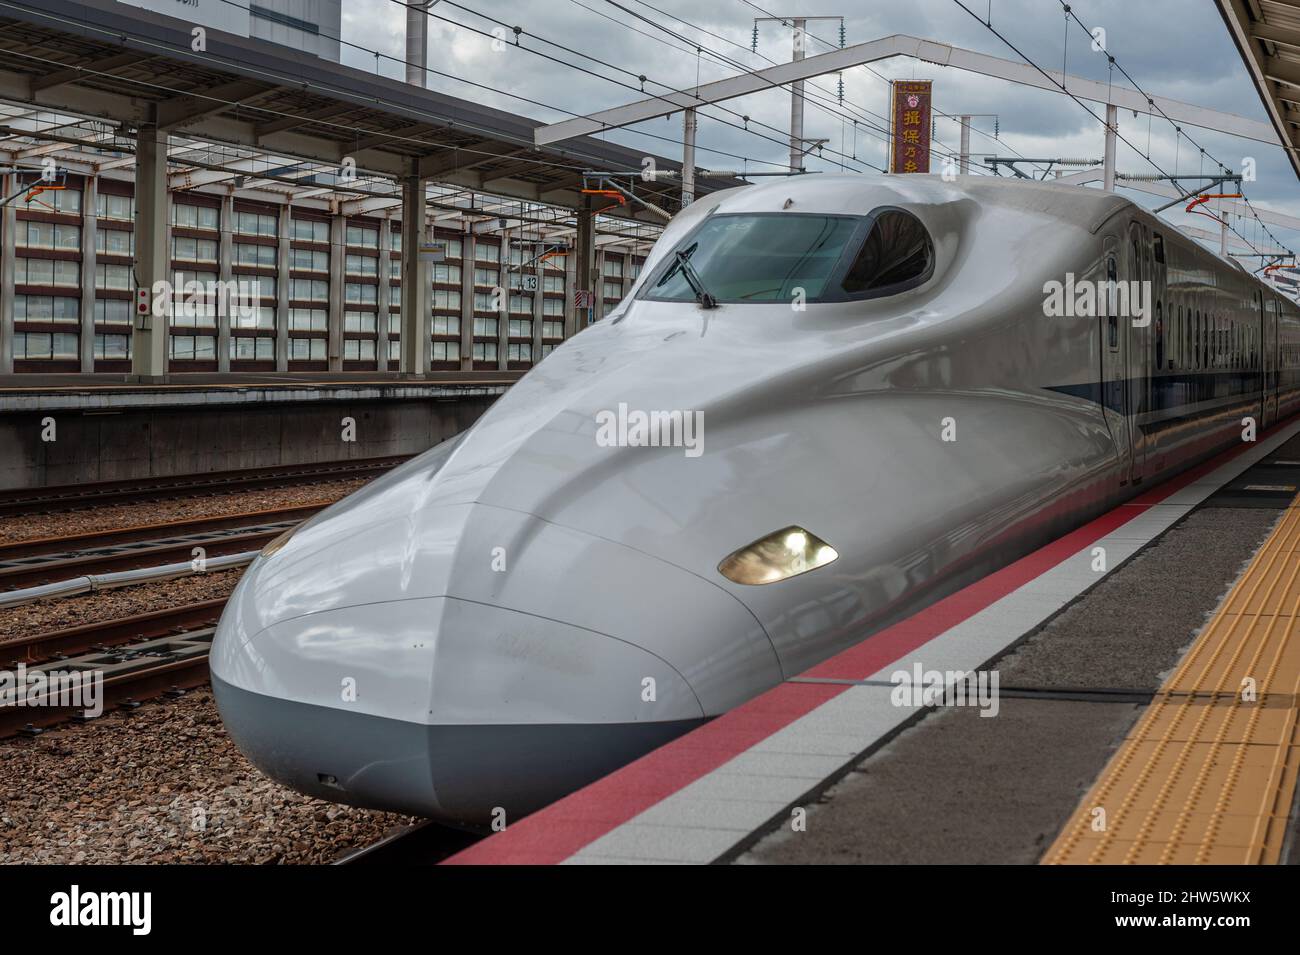 Depender de Invalidez Depresión Himeji, Japón - Januari 8, 2020. Un tren bala de alta velocidad shinkansen  pasa por la estación de tren de Hemiji. Shinkansen es una red de trenes de  largo alcance en Japón,